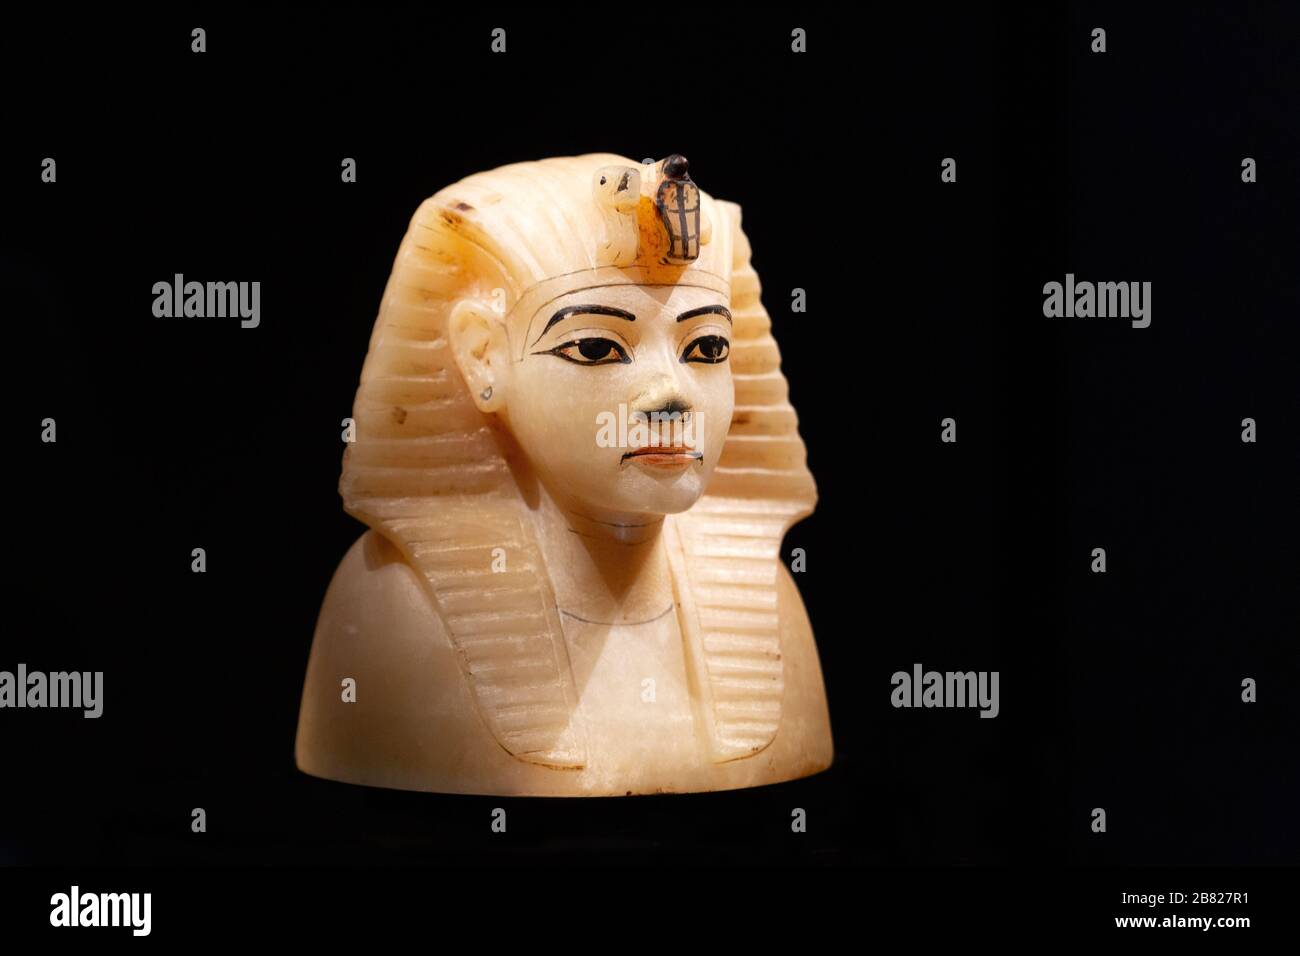 Tesoro tomba Tutankhamun - tappo di calcite per un vaso canopico alla moda della testa del faraone Tutankhamen dall'antico Egitto Foto Stock